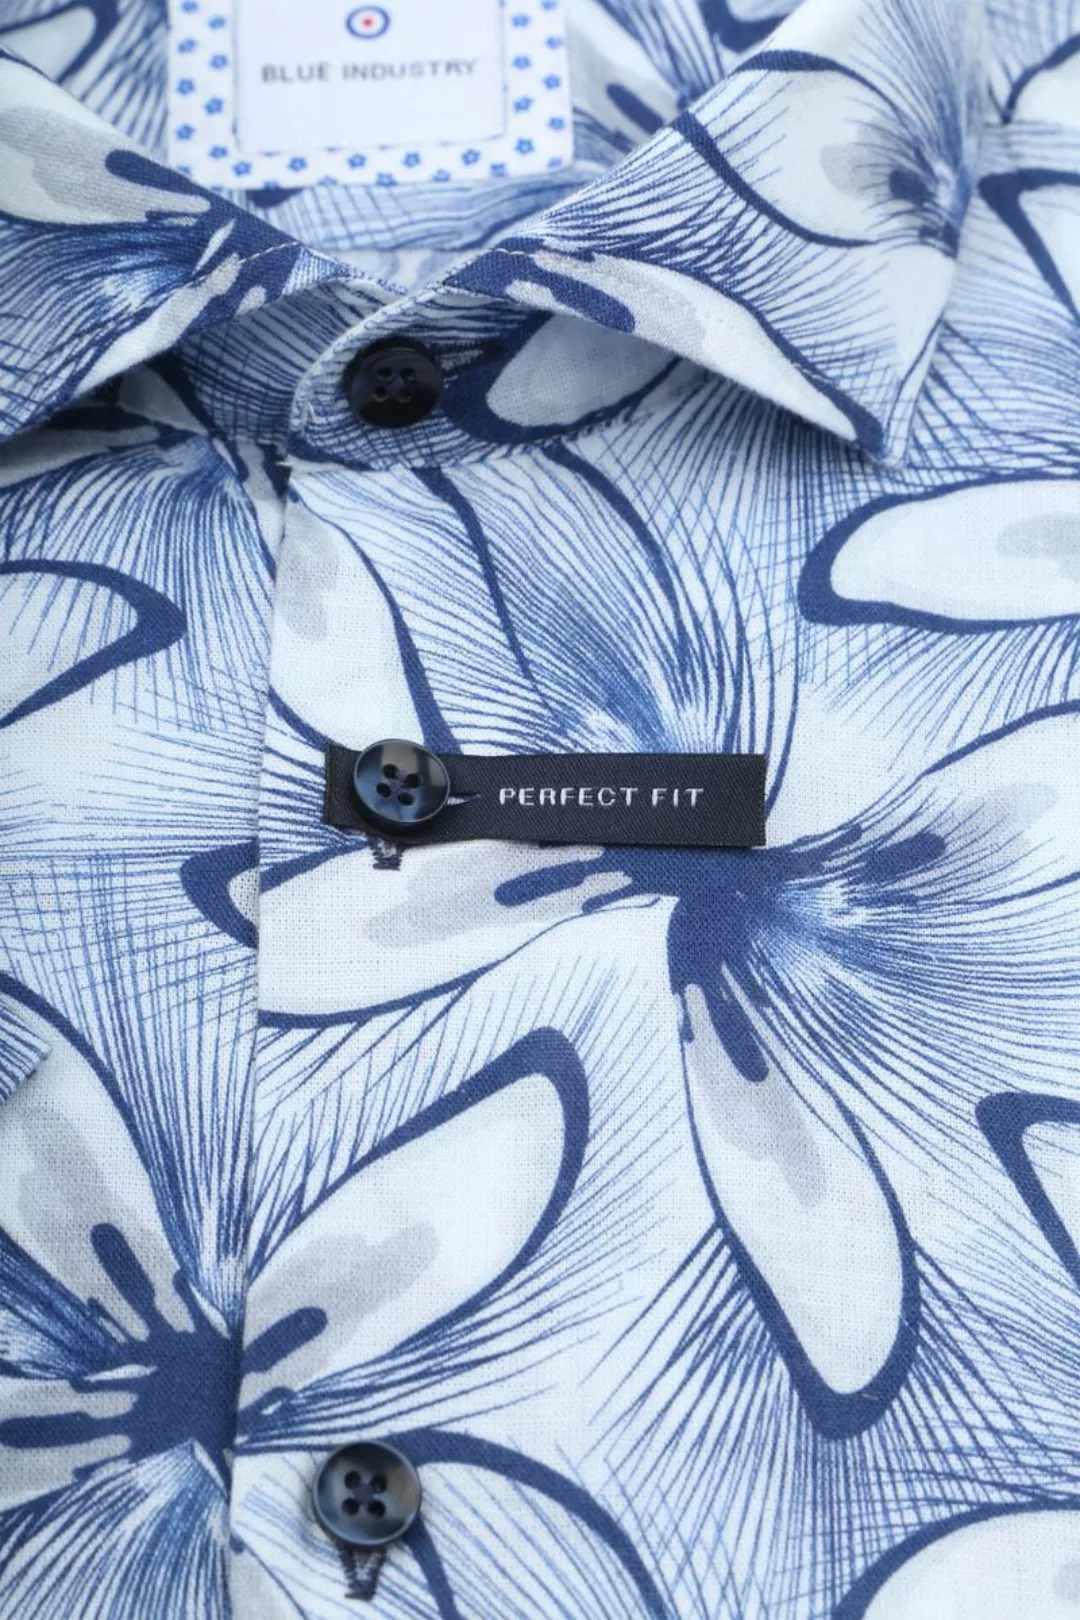 Blue Industry Short Sleeve Hemd Leinen Druck Blau - Größe 44 günstig online kaufen